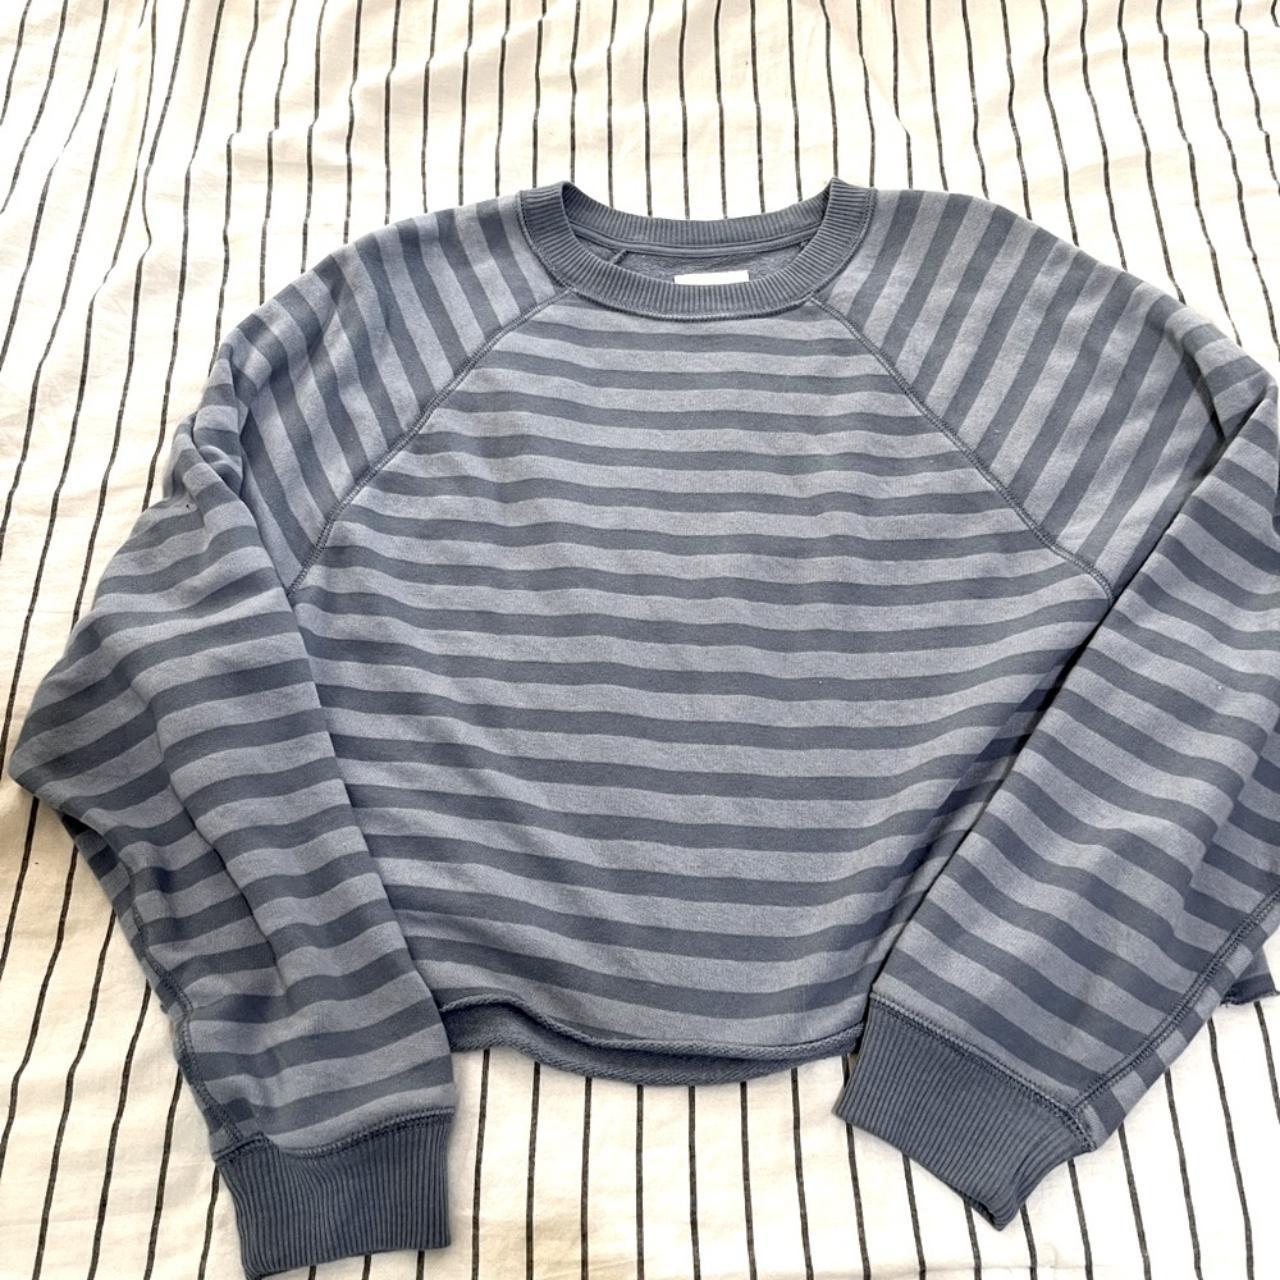 Blue Striped Oversized Long Sleeve Sweater Top Great... - Depop